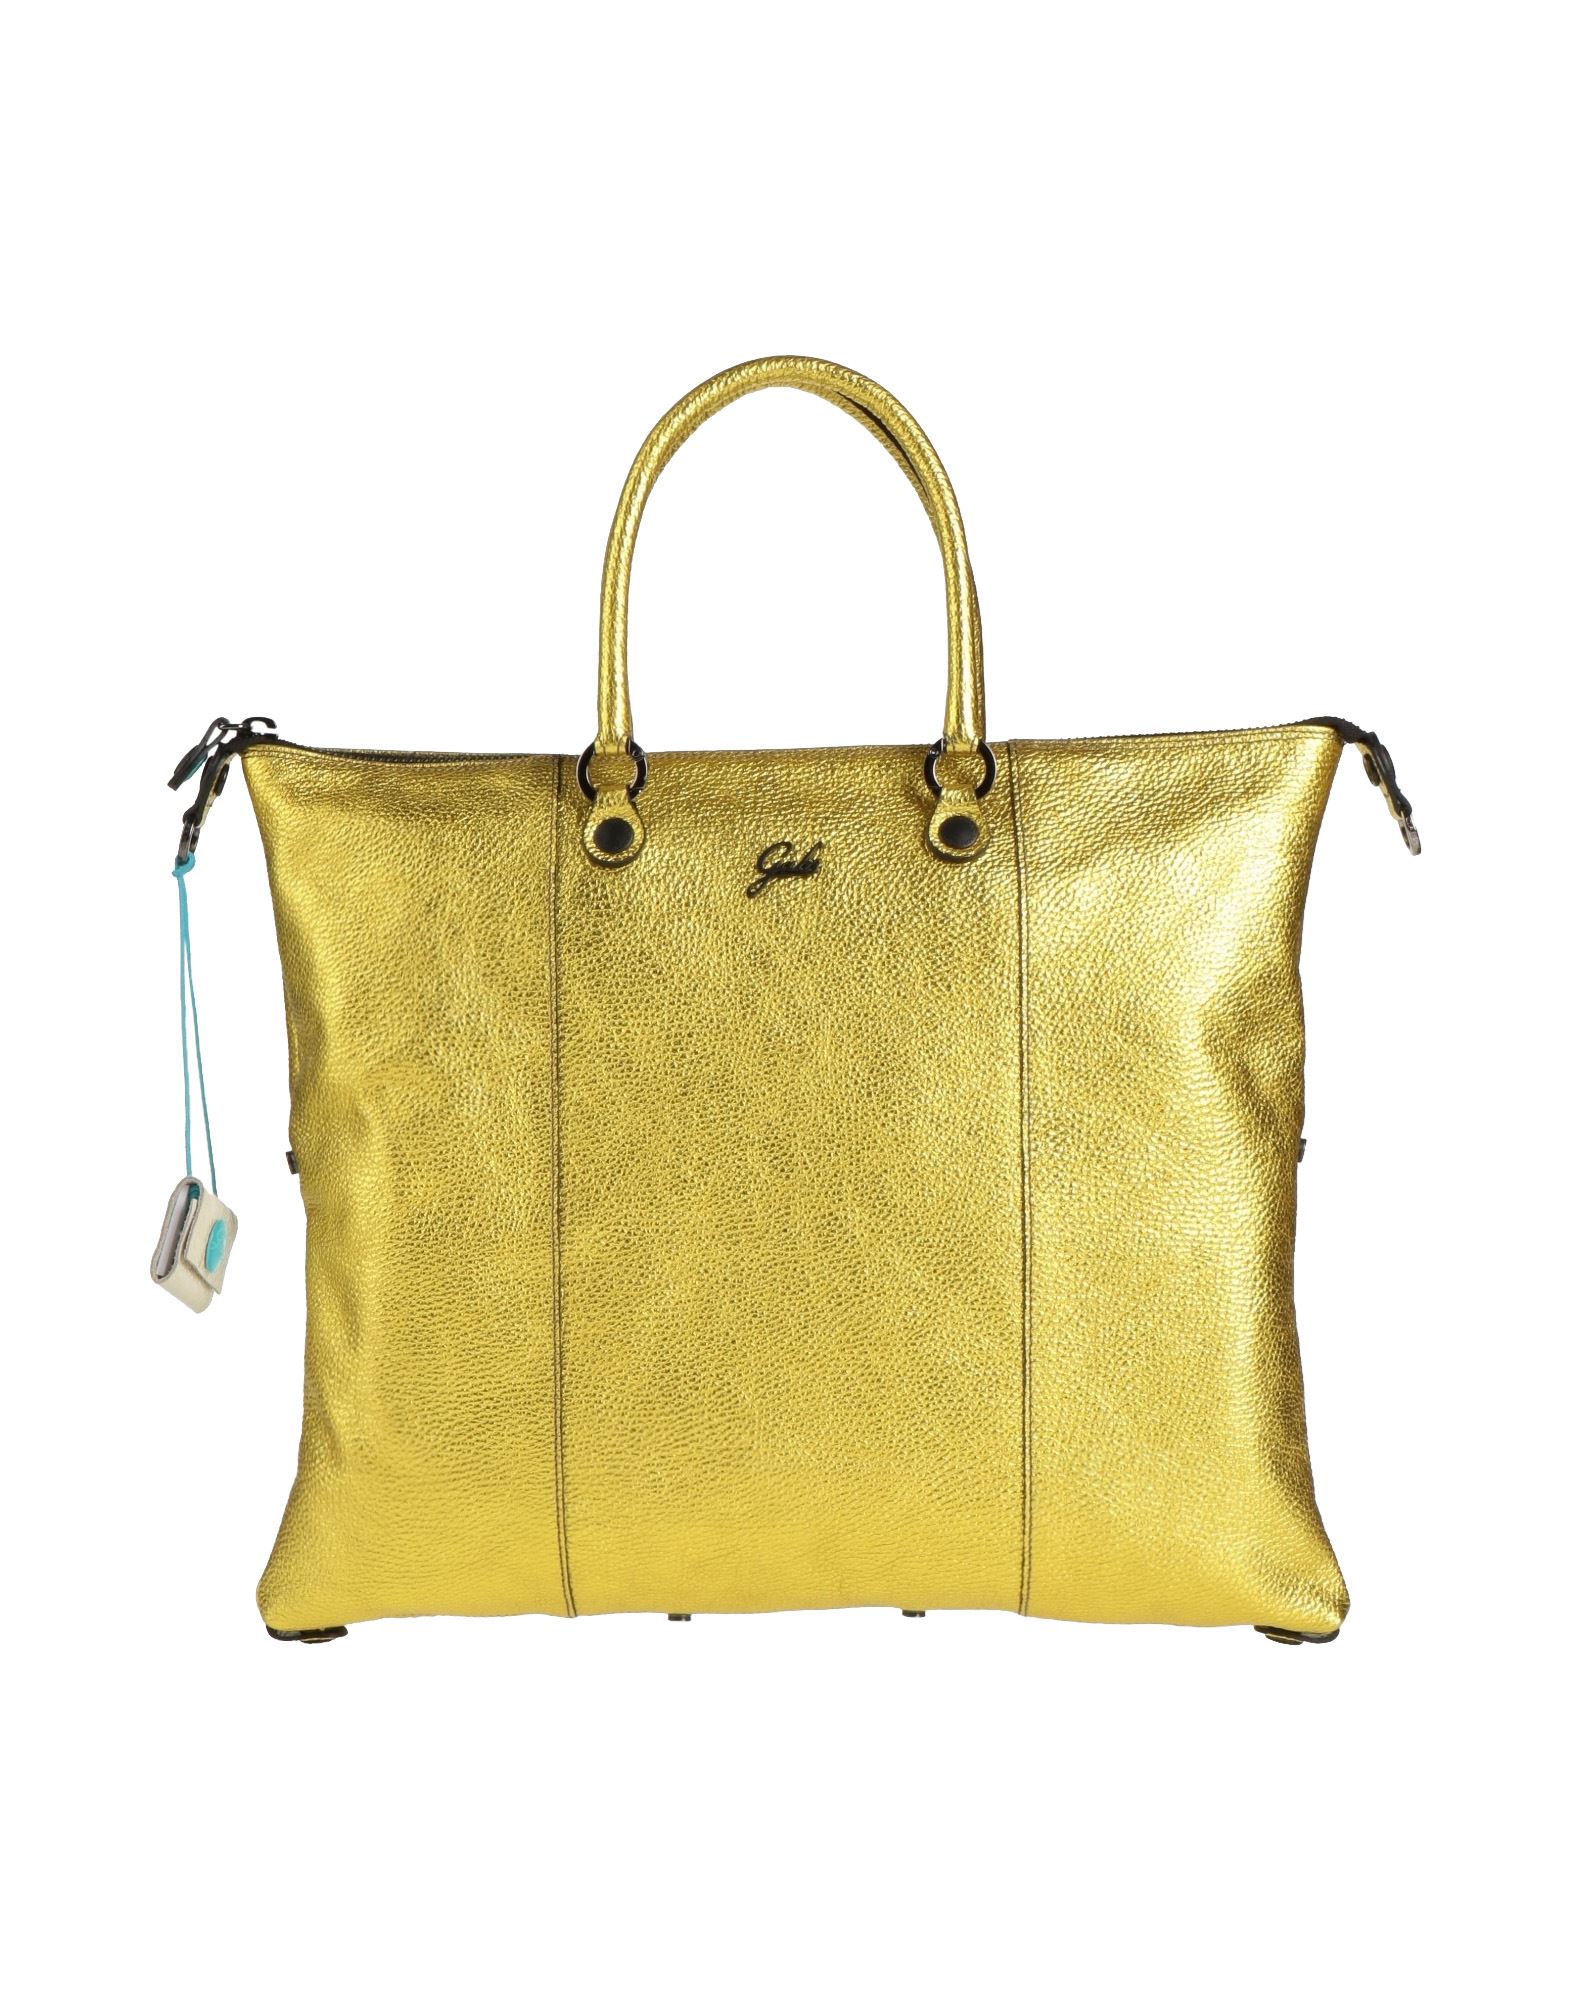 Gabs Handbags In Gold